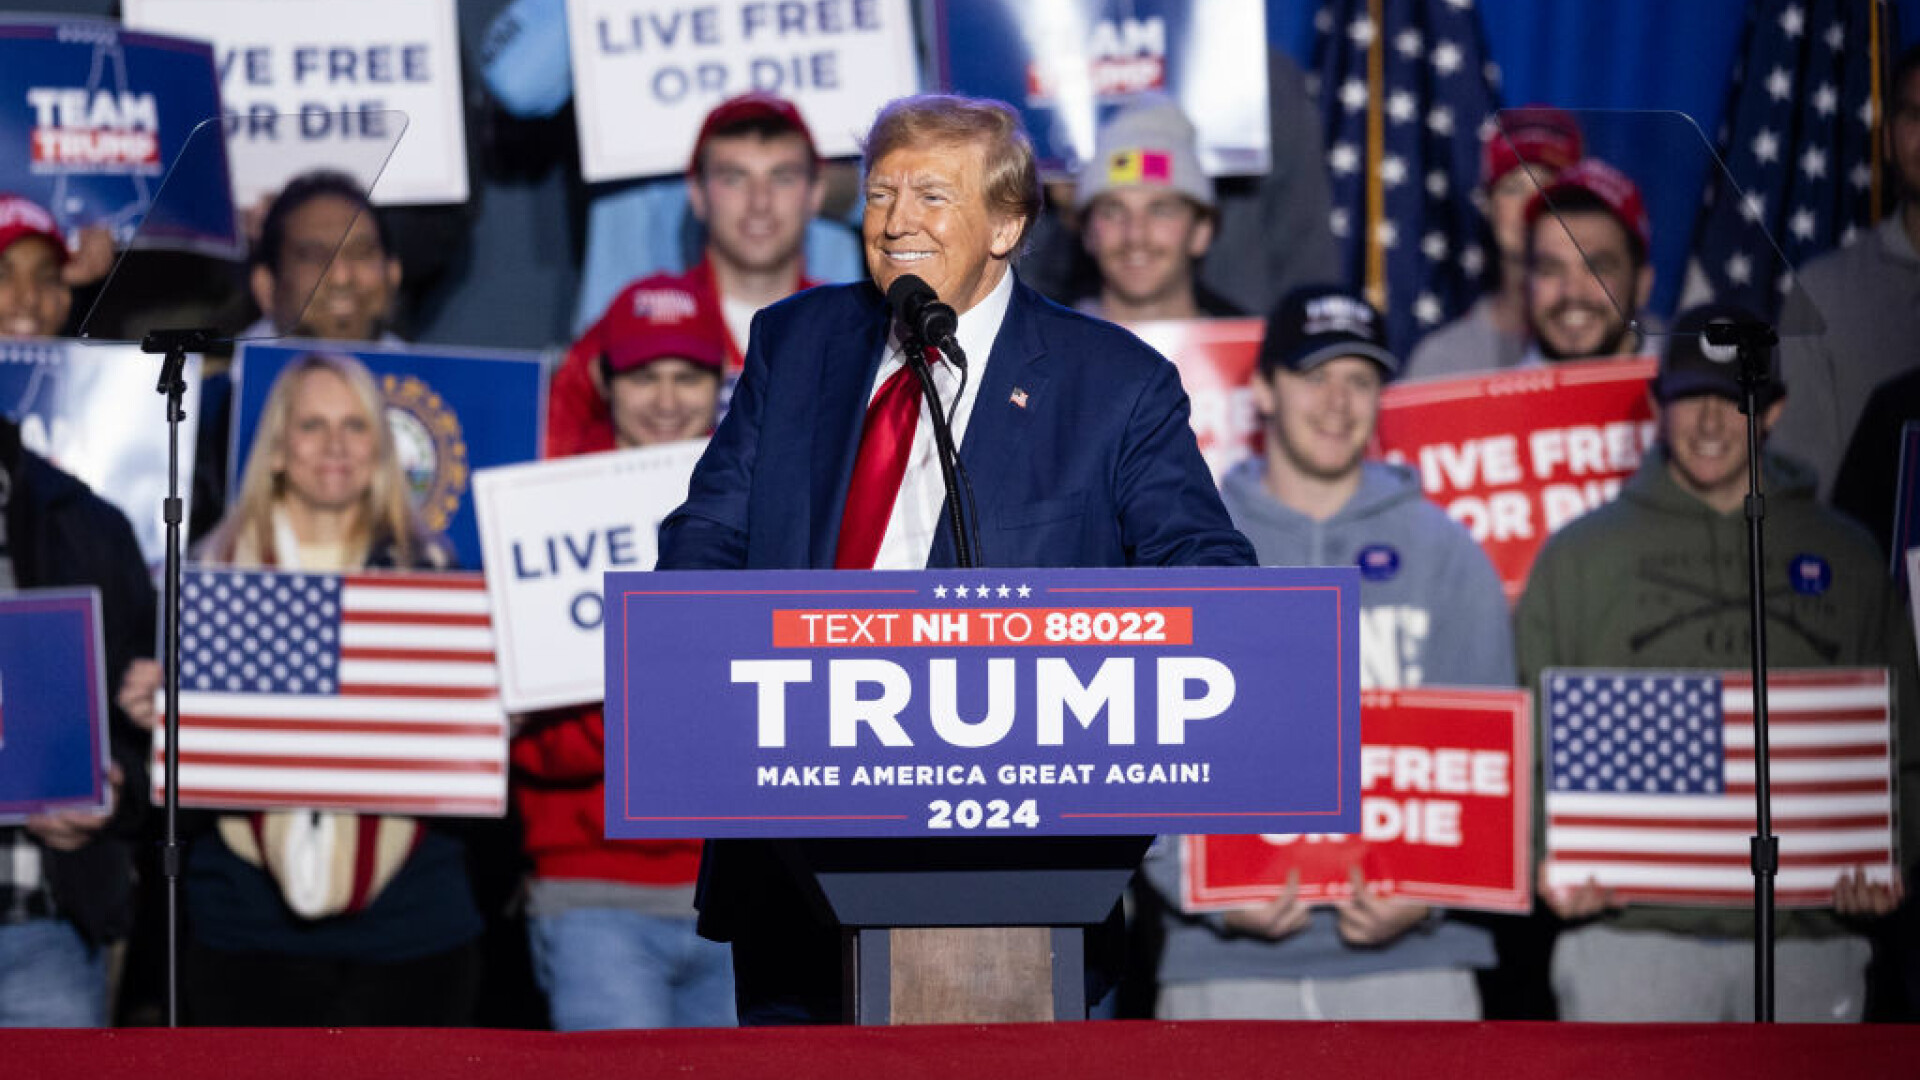 Donald Trump: Imigranții „otrăvesc sângele țării”. Afirmațiile din campanie, considerate fasciste, xenofobe și rasiste